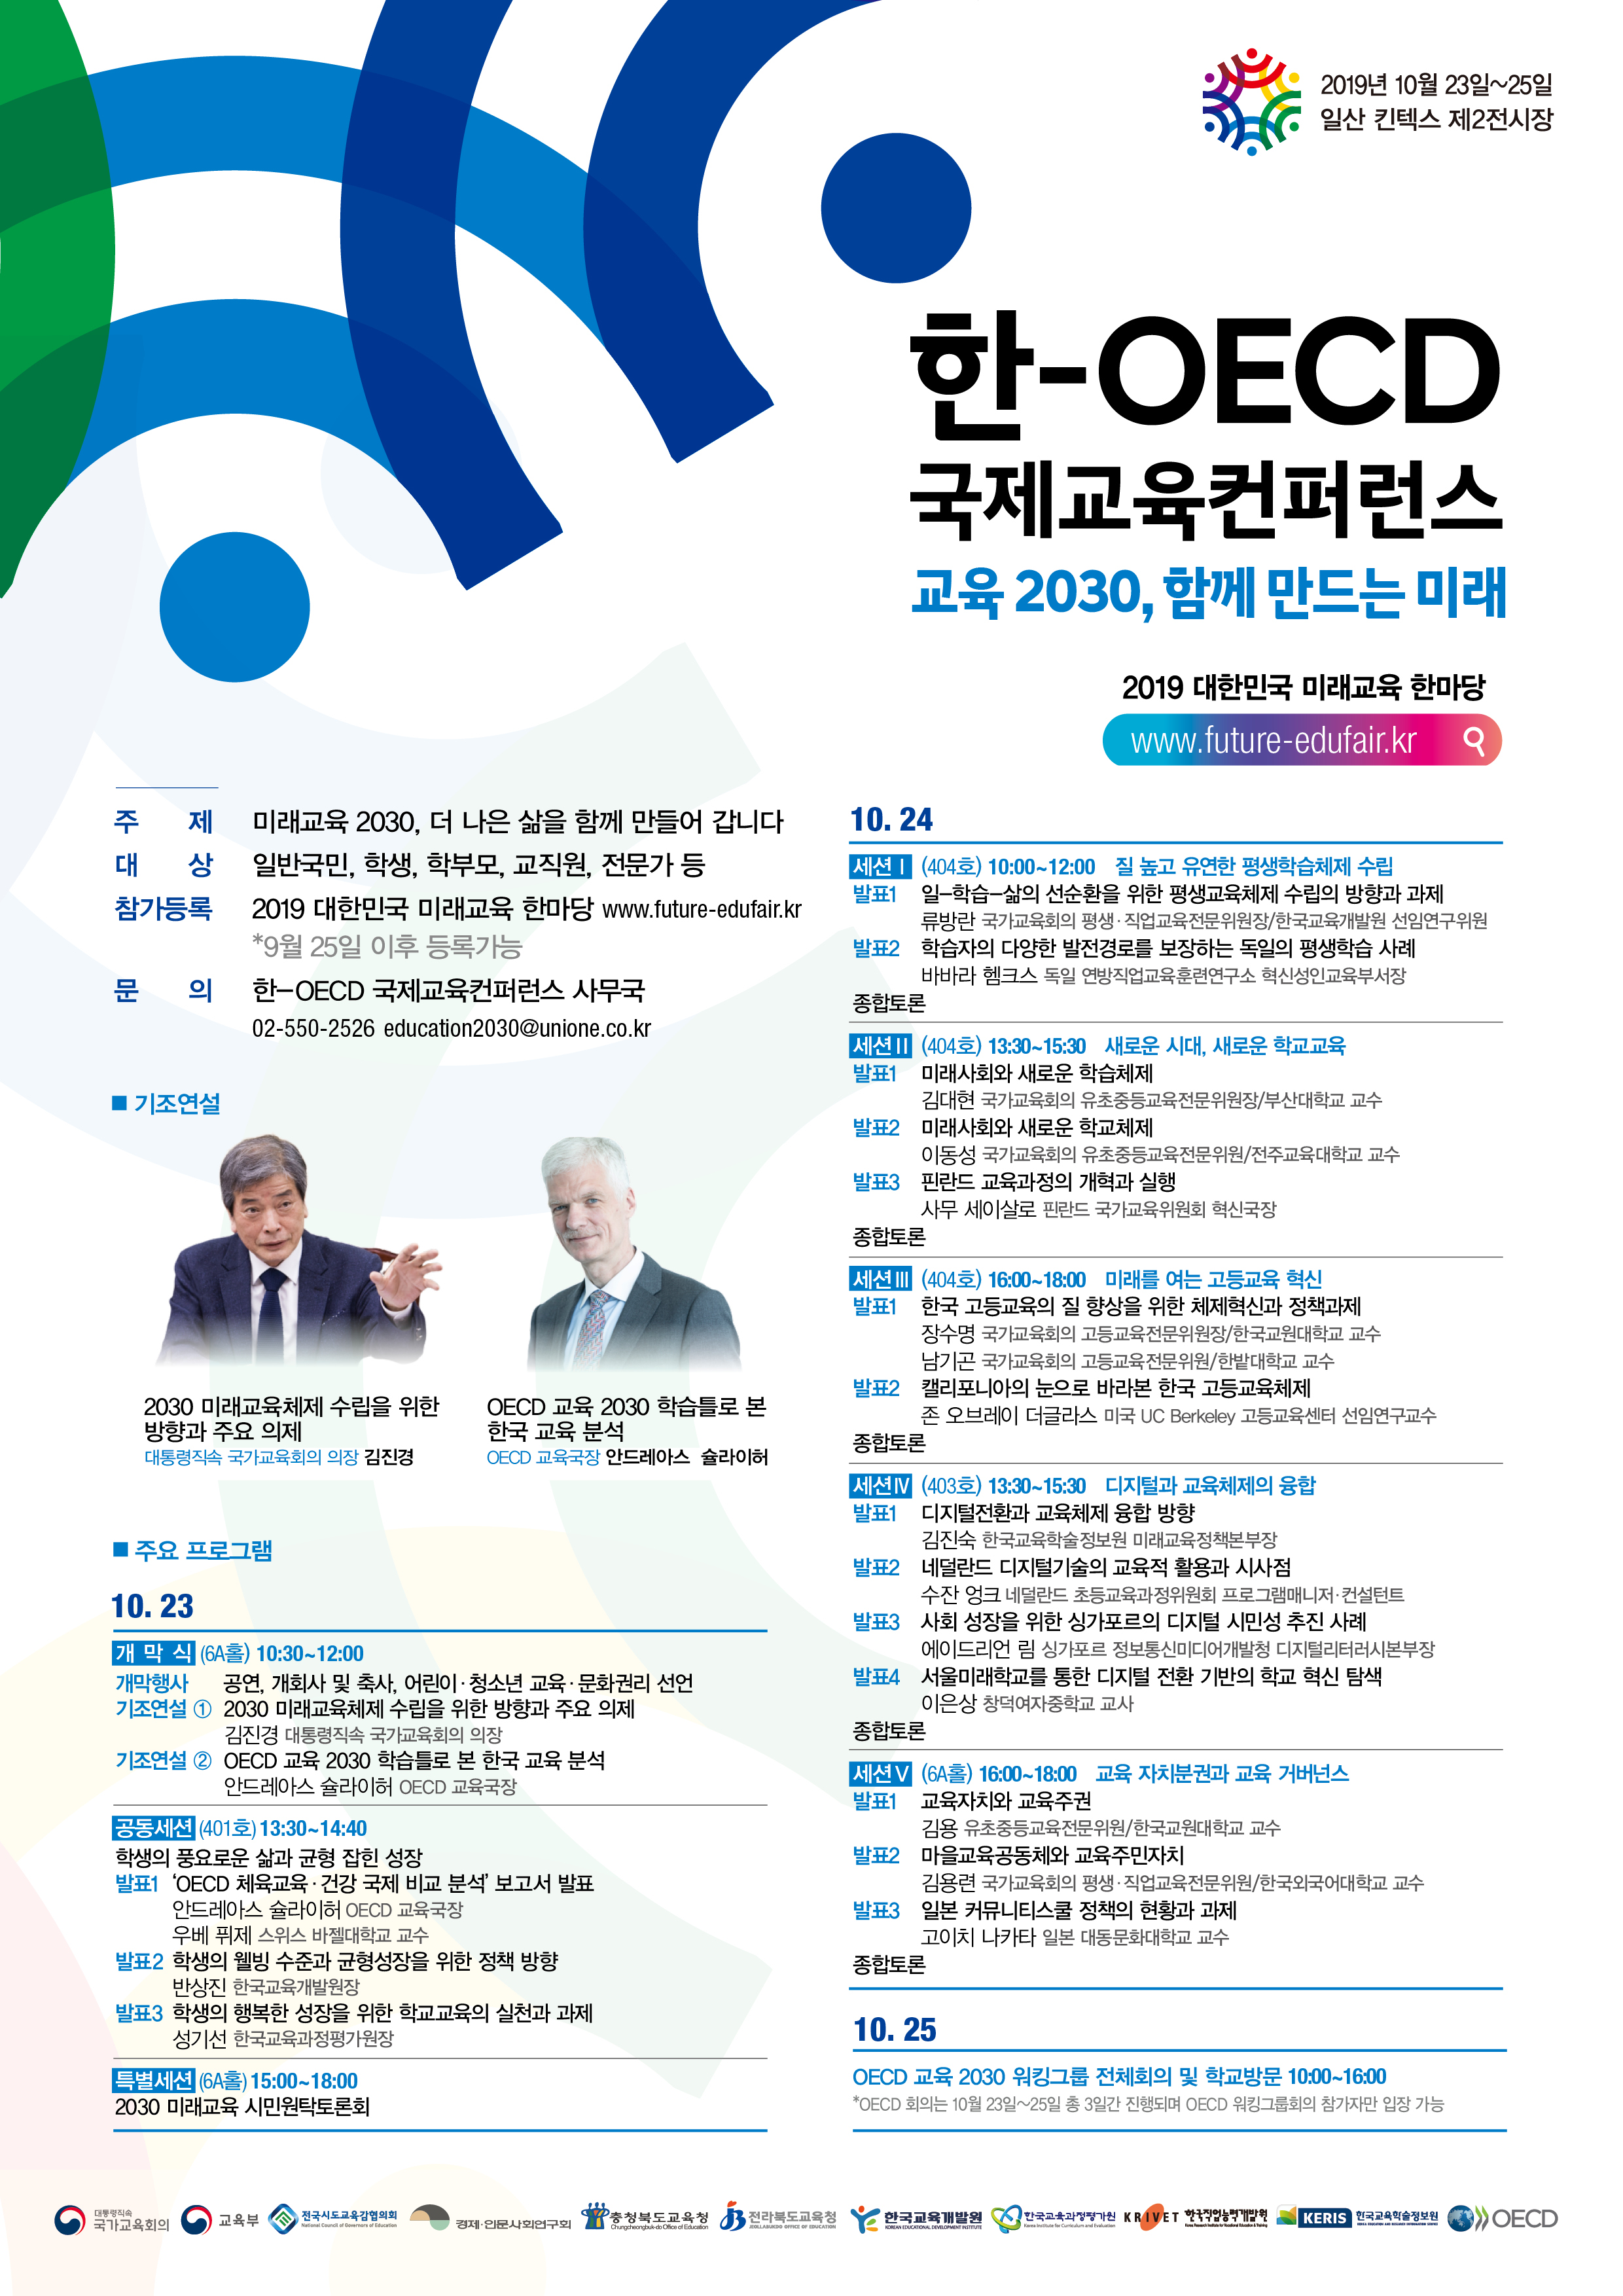 '한-OECD 국제교육컨퍼런스' 개최 안내입니다. 자세한 사항은 아래의 글을 참조해주세요.